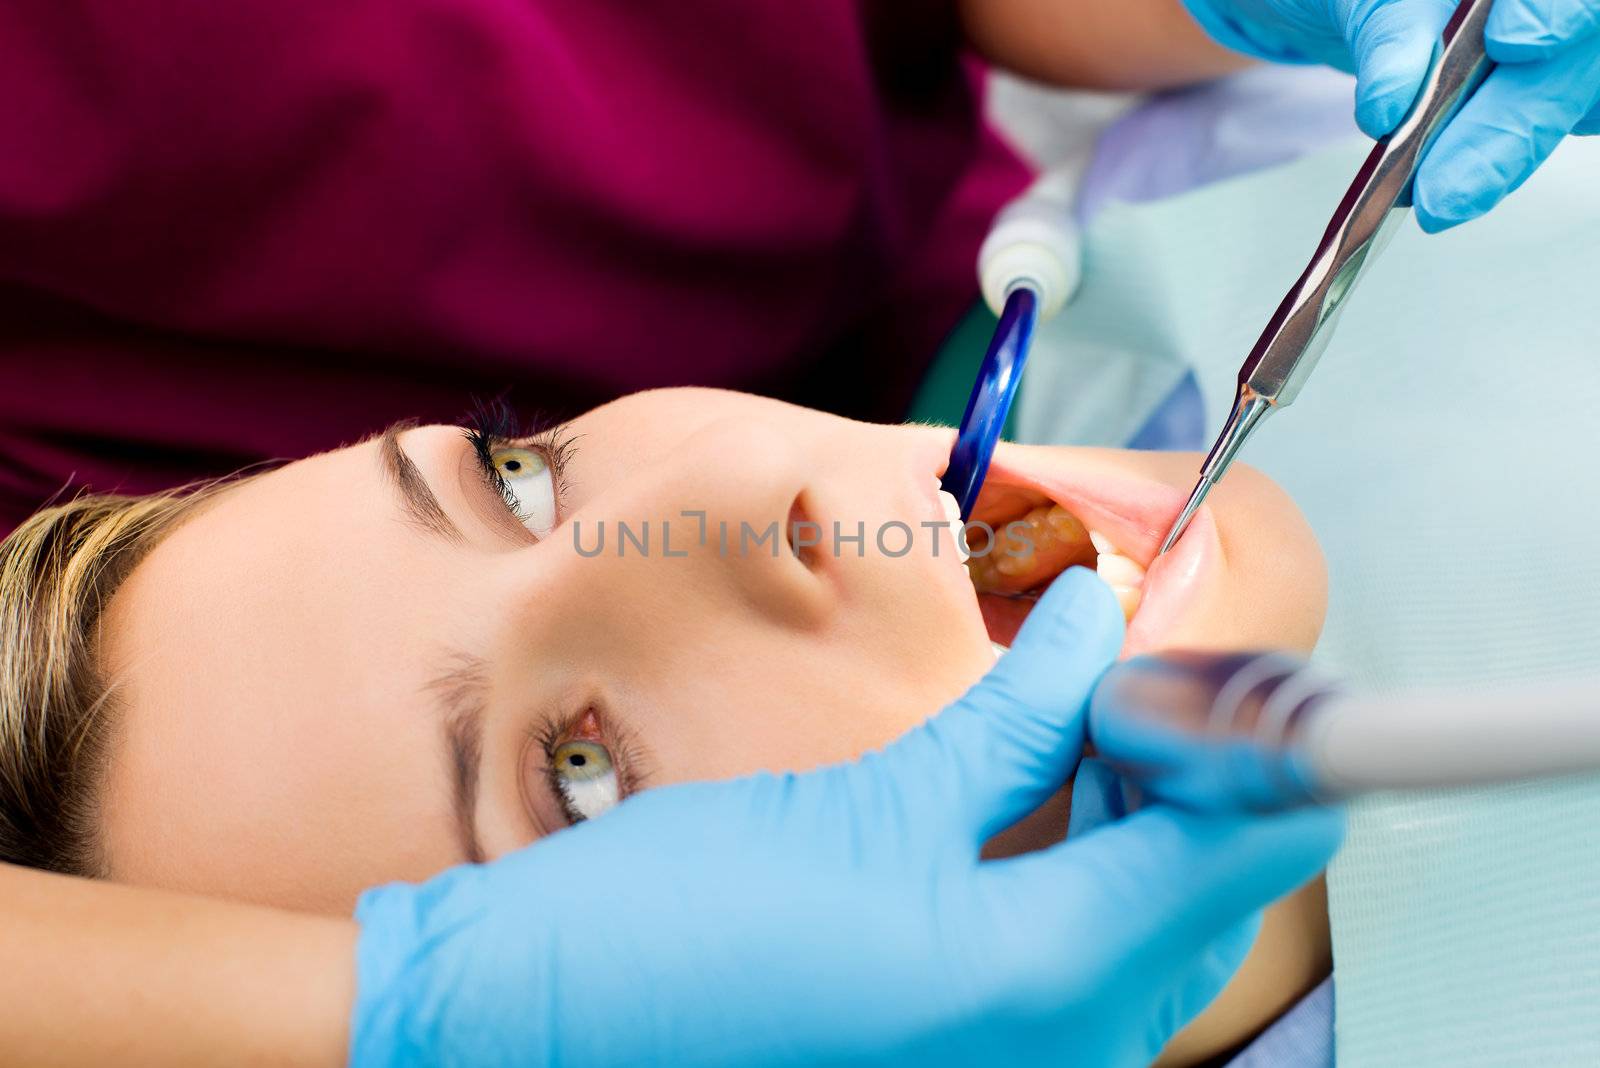 dentist working patient by vilevi